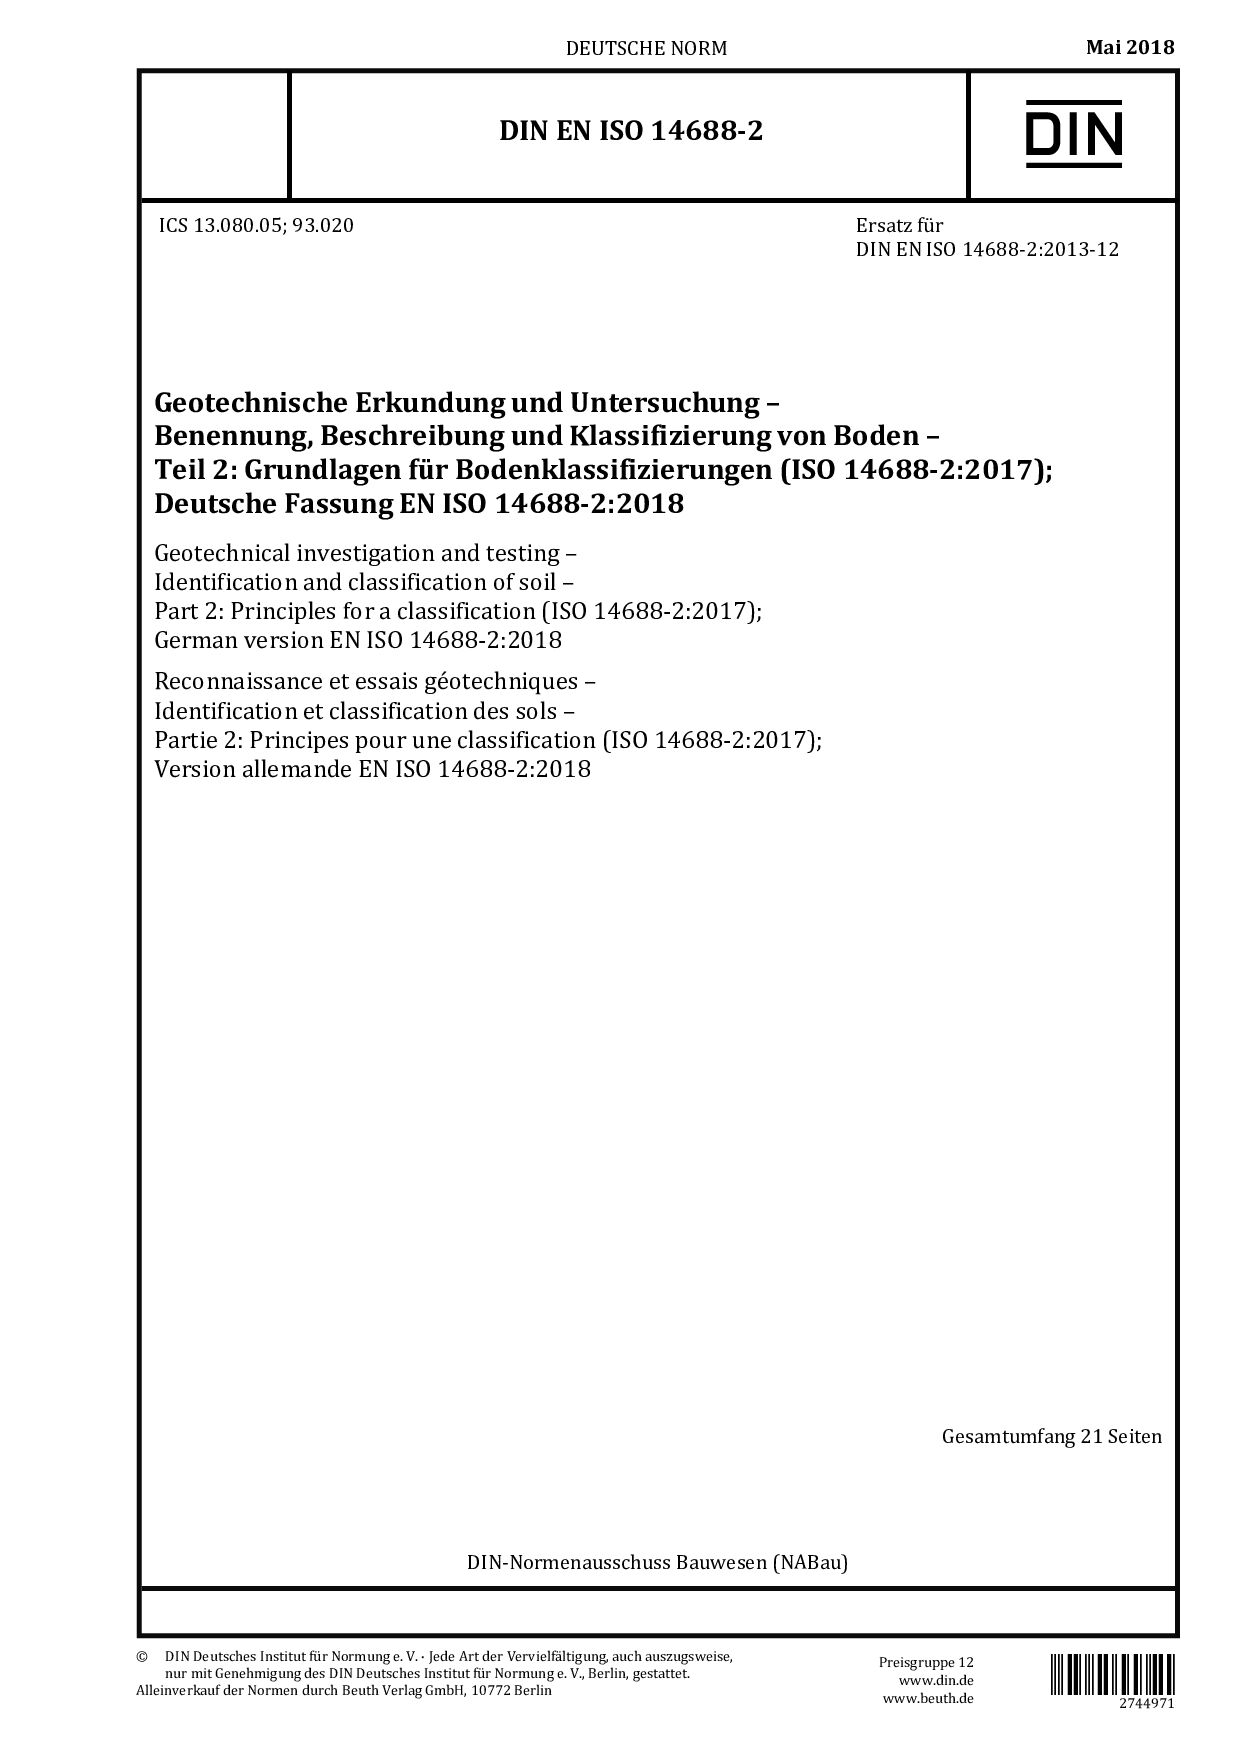 DIN EN ISO 14688-2:2018封面图